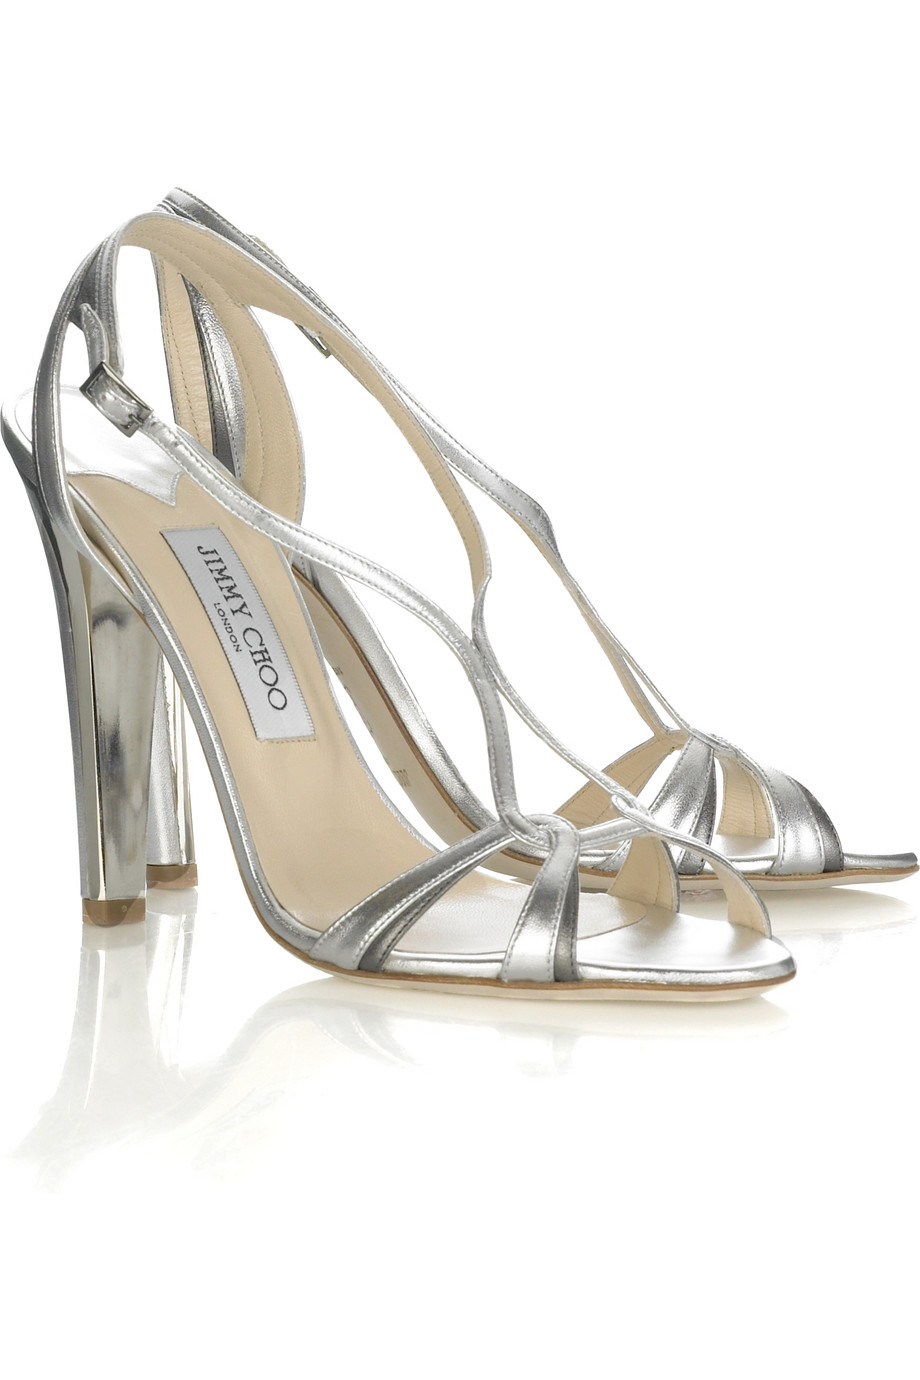 COM : pumps heels